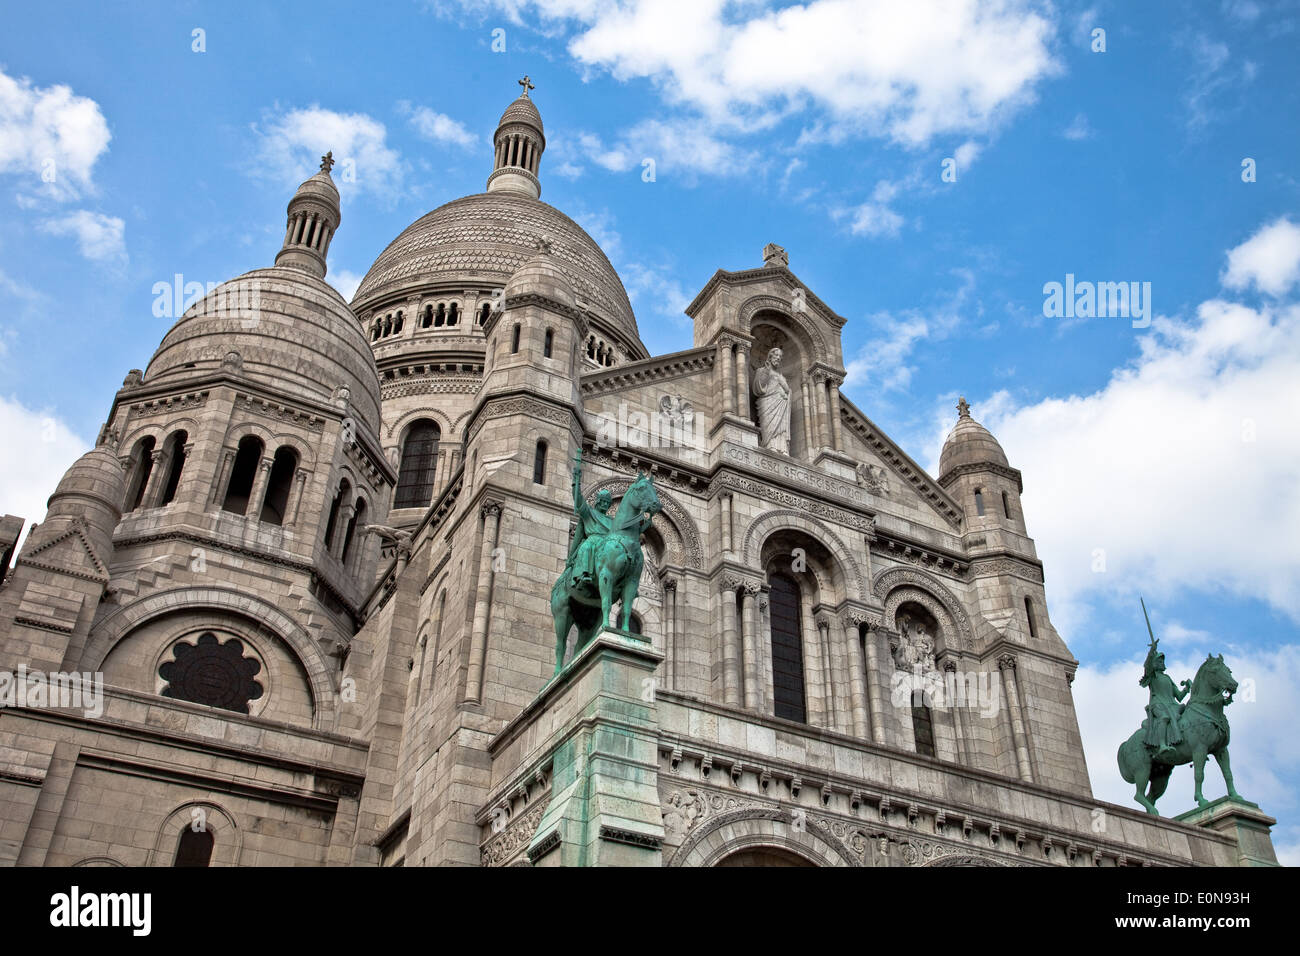 Sacre Coeur, Paris, Frankreich - Sacre Coeur, Paris, France Stock Photo